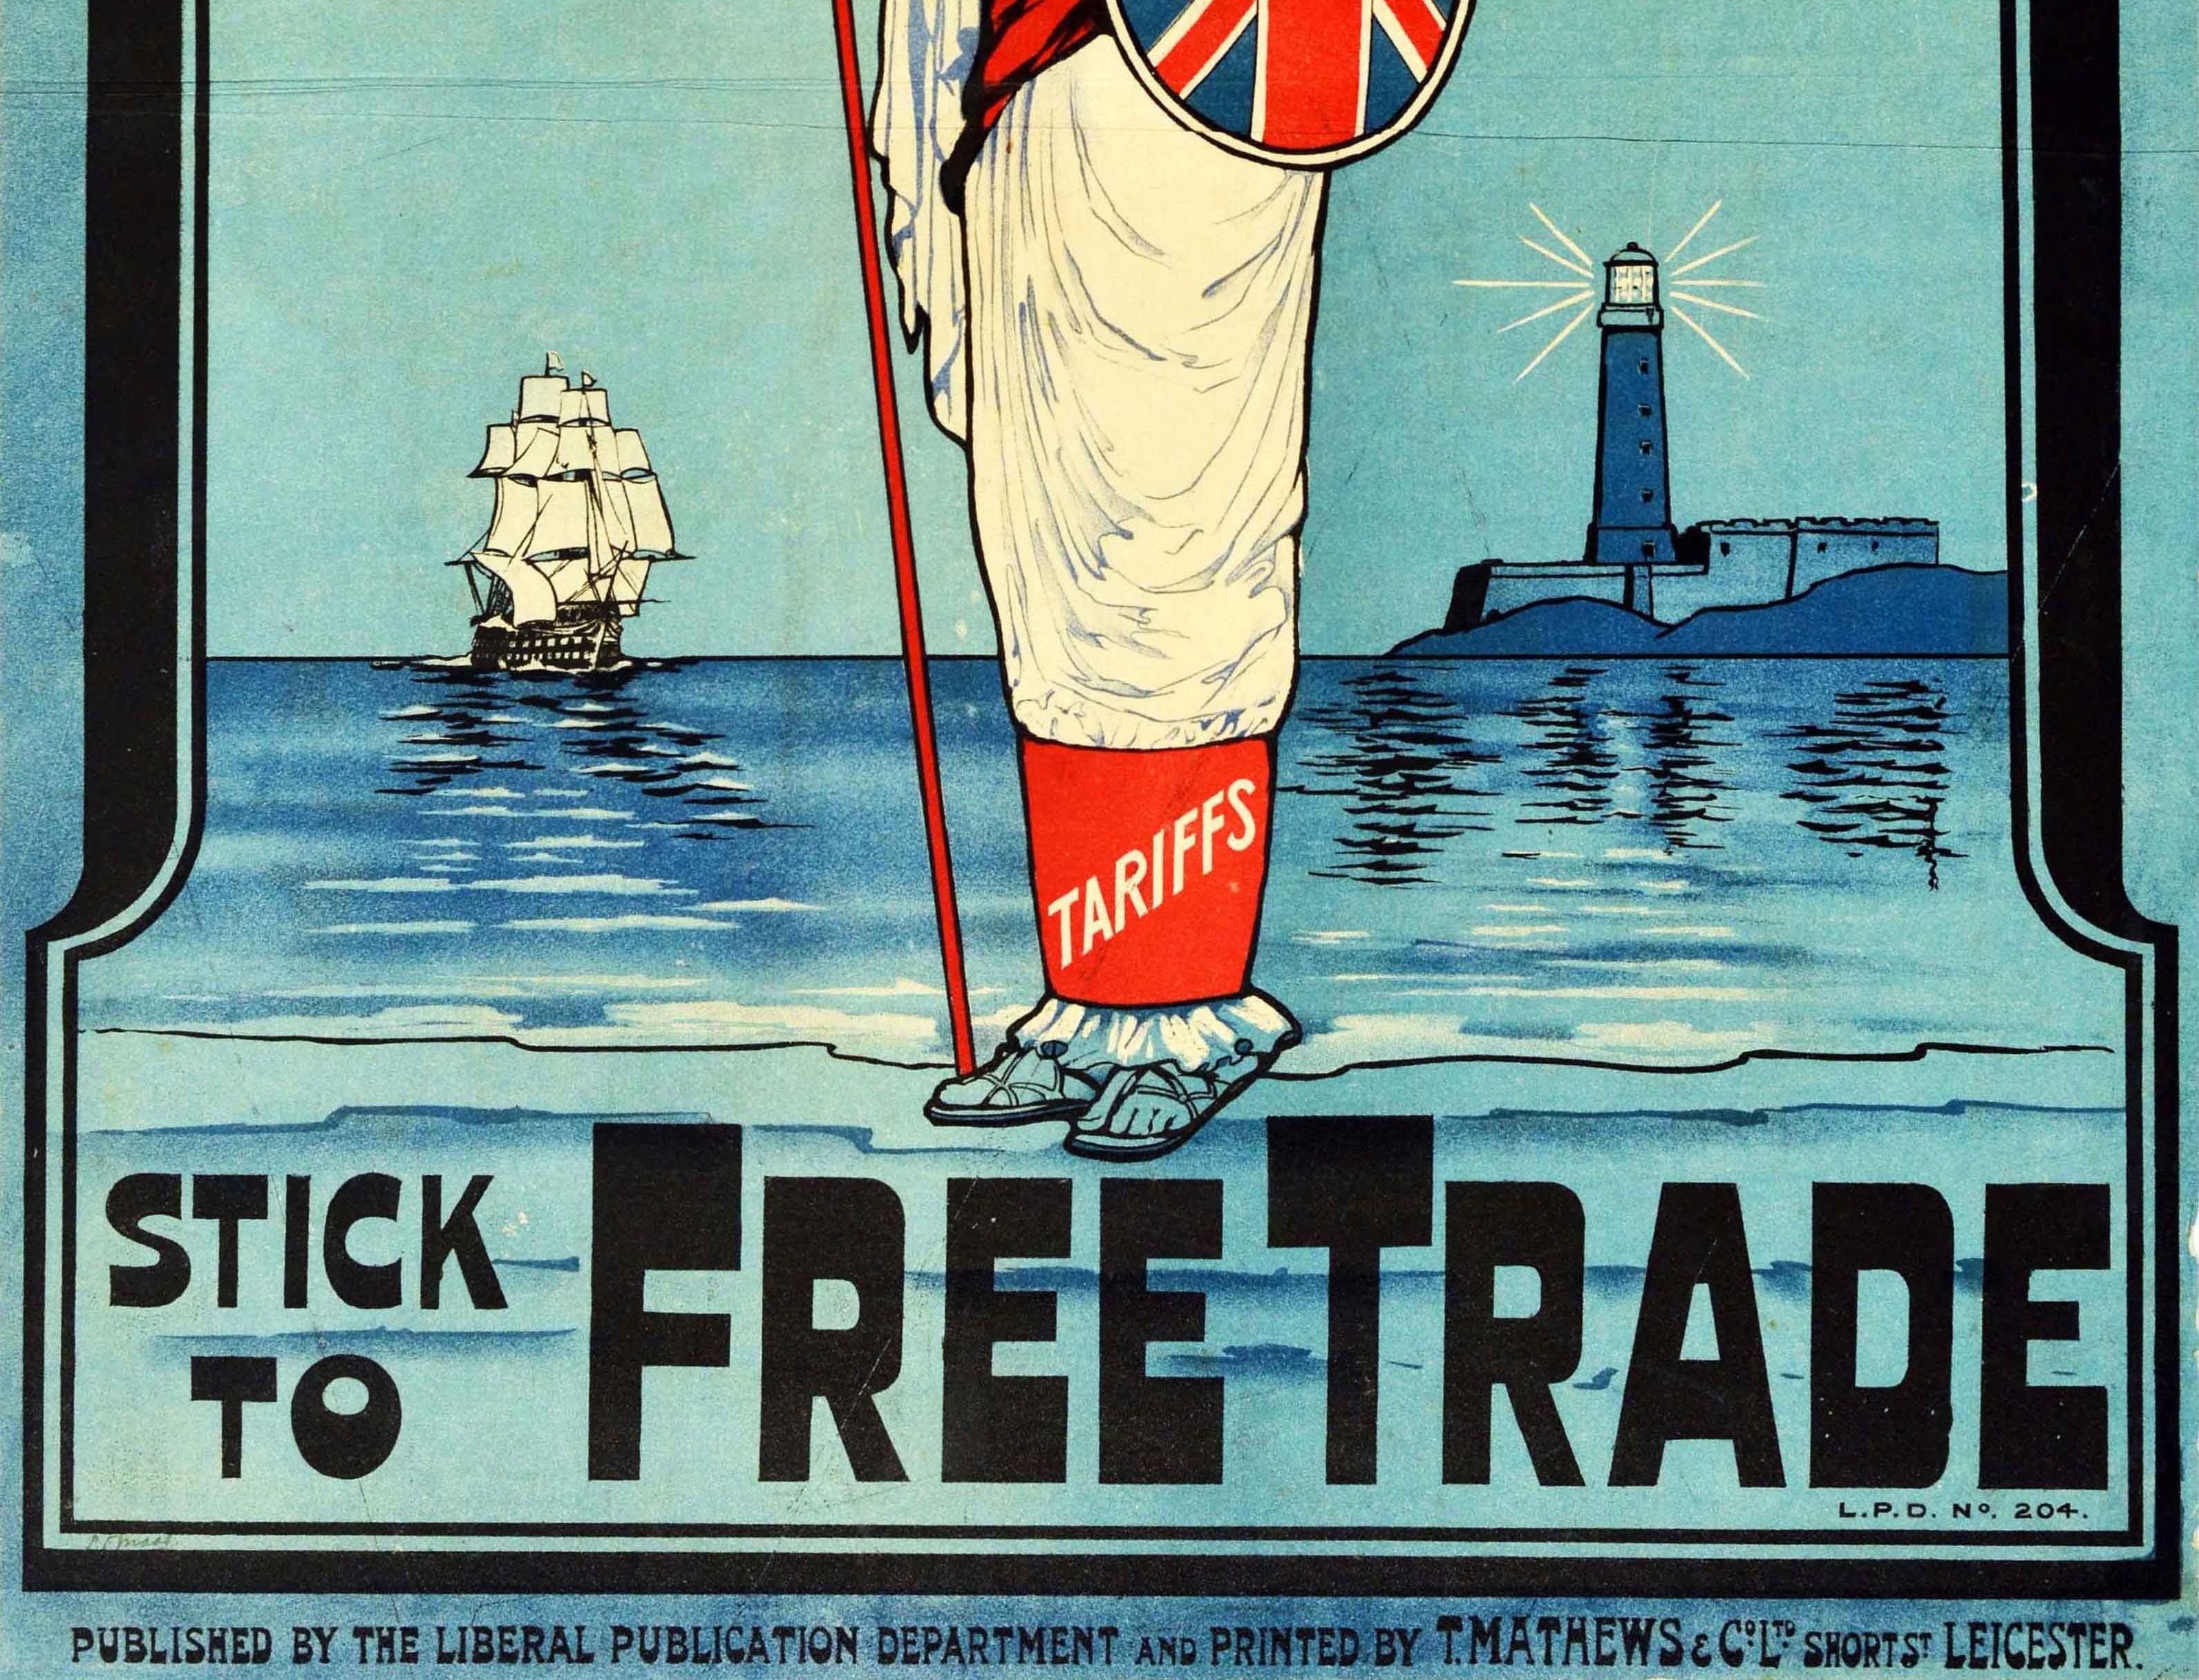 free trade poster